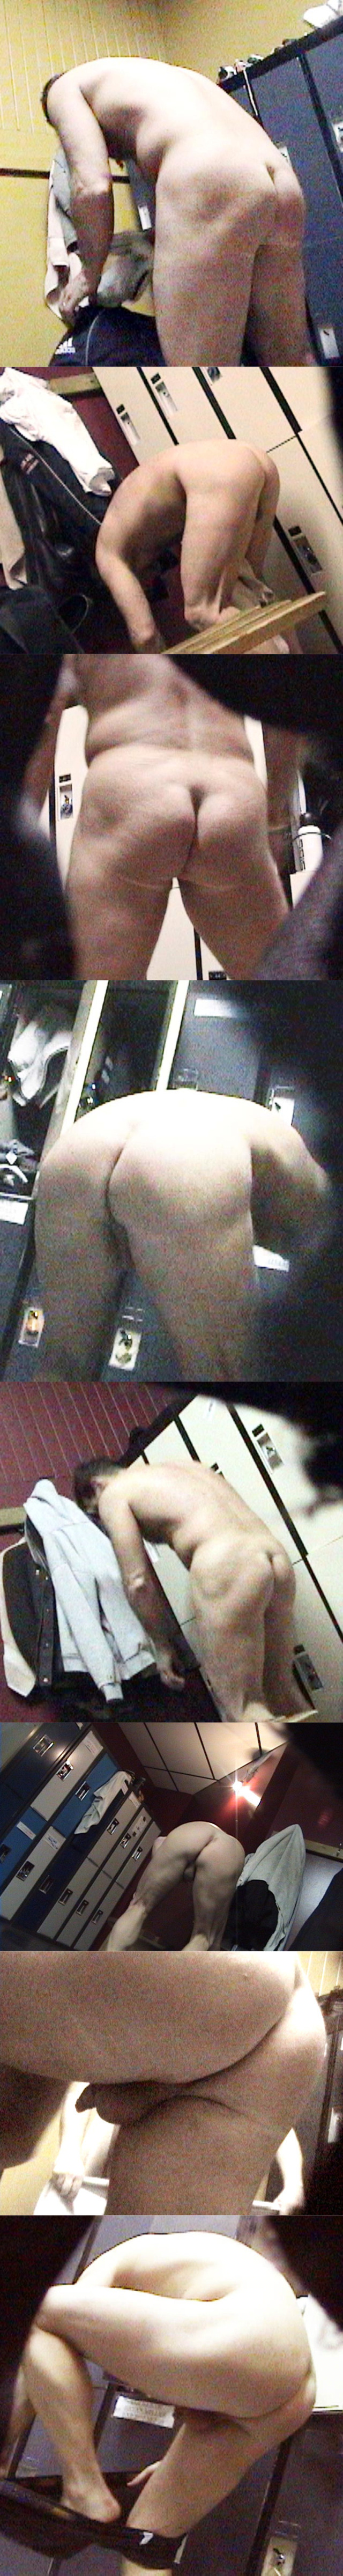 naked men lockerroom ass